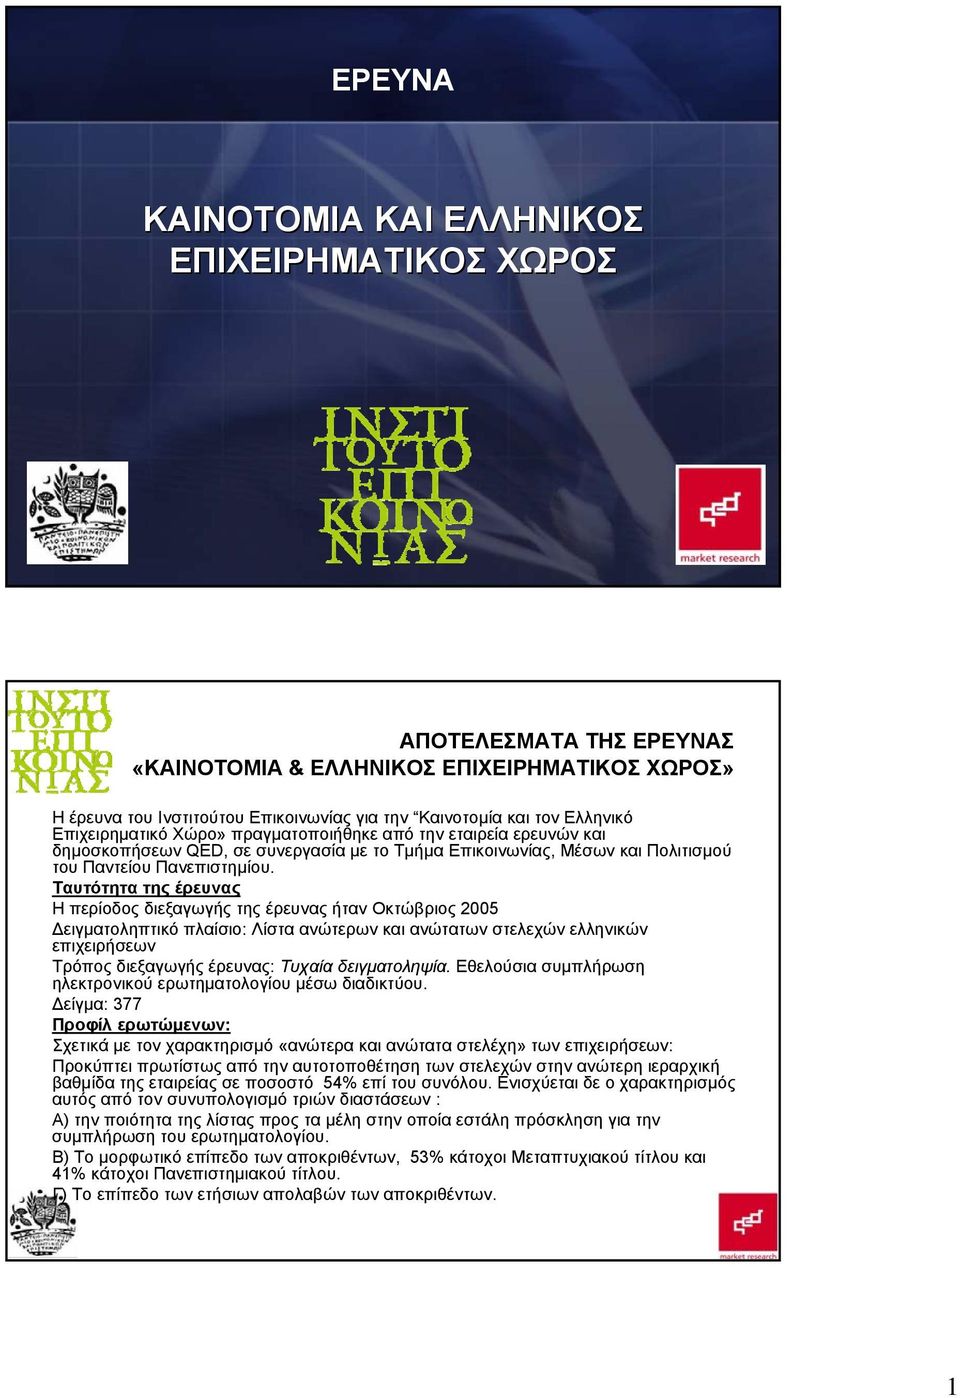 Ταυτότητα της έρευνας Η περίοδος διεξαγωγής της έρευνας ήταν Οκτώβριος 2005 Δειγματοληπτικό πλαίσιο: Λίστα ανώτερων και ανώτατων στελεχών ελληνικών επιχειρήσεων Τρόπος διεξαγωγής έρευνας: Τυχαία